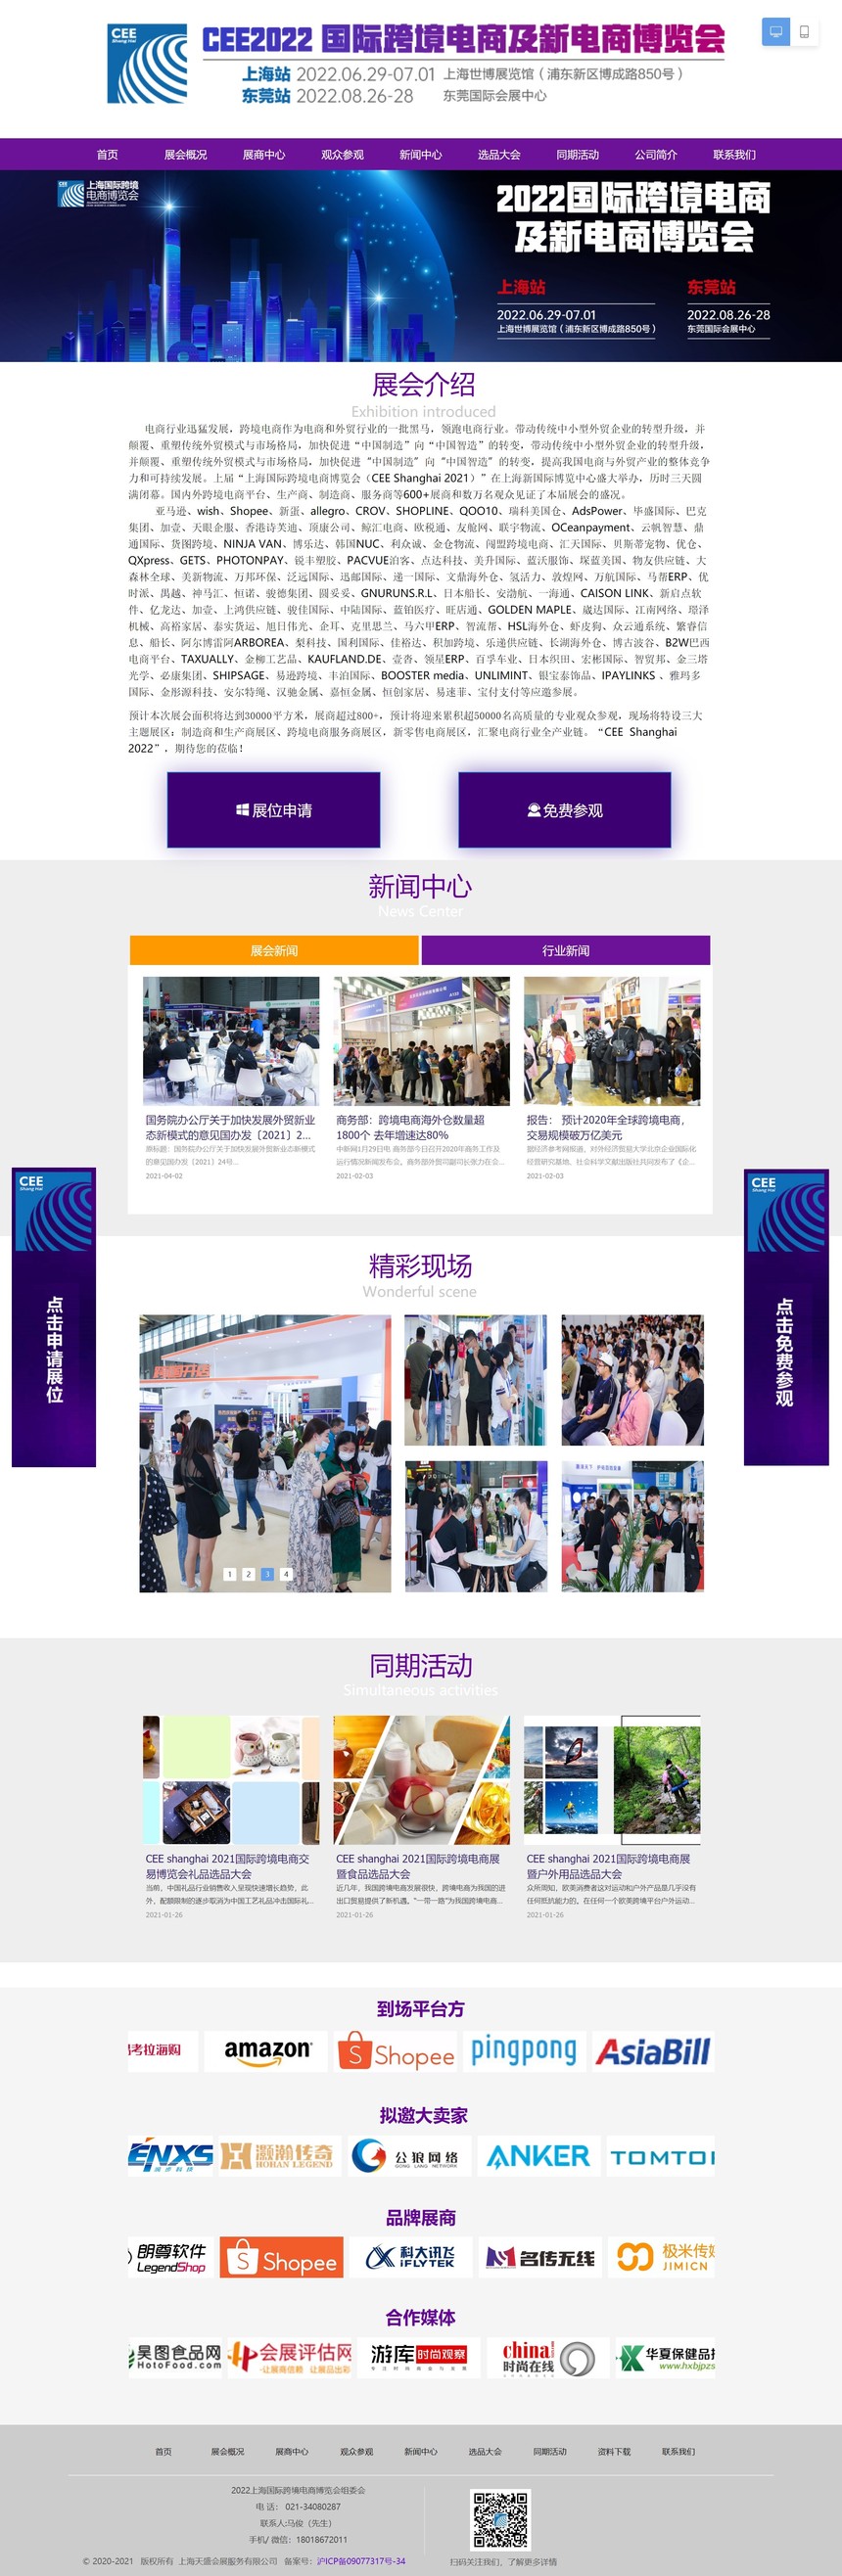 跨境电商-2021上海国际跨境电商博览会.jpg